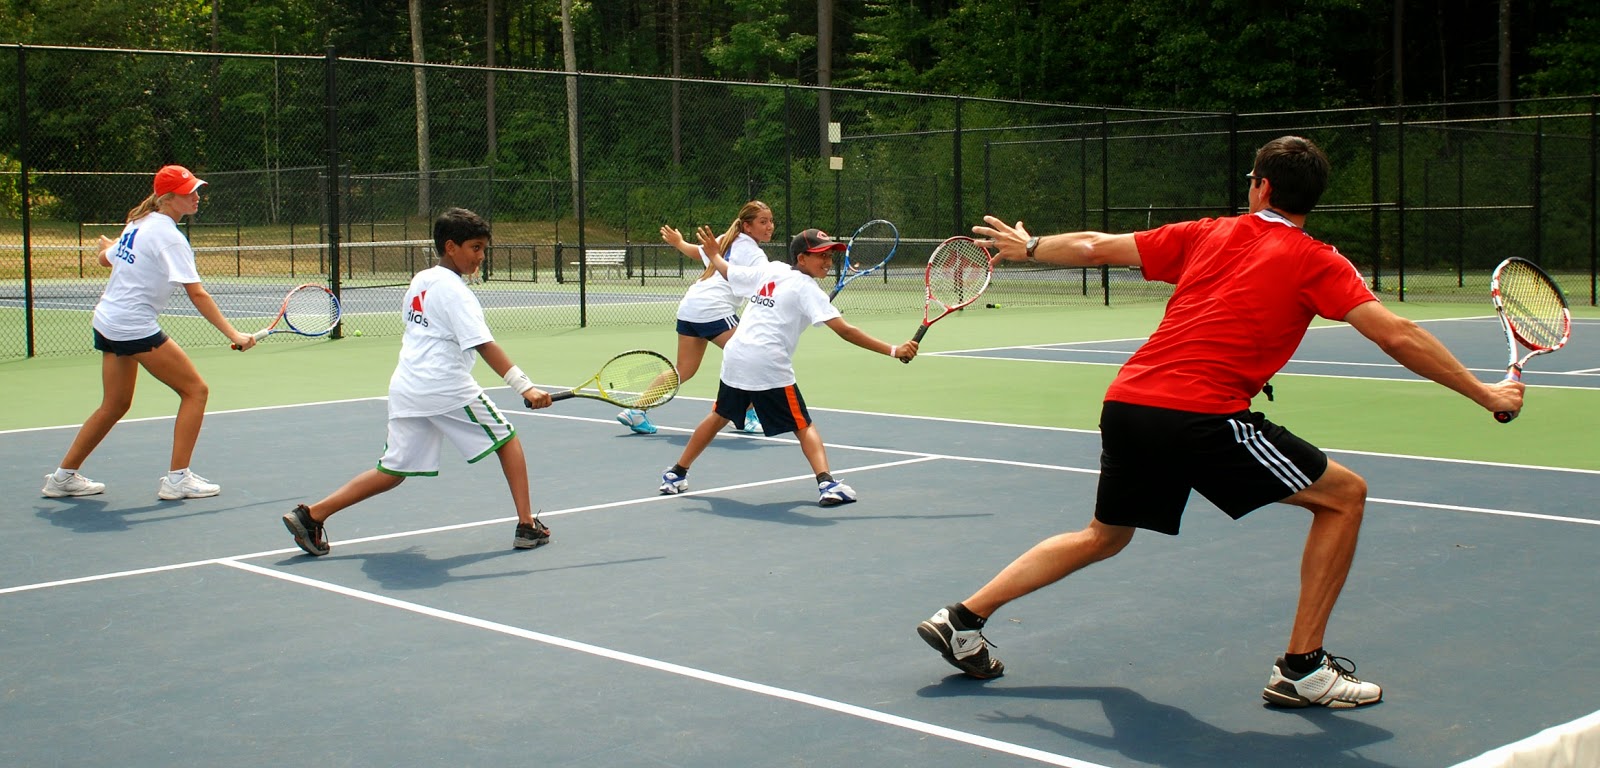 Мужики лижут попы и дают в члены в дырки своим партнершам по теннису на корте